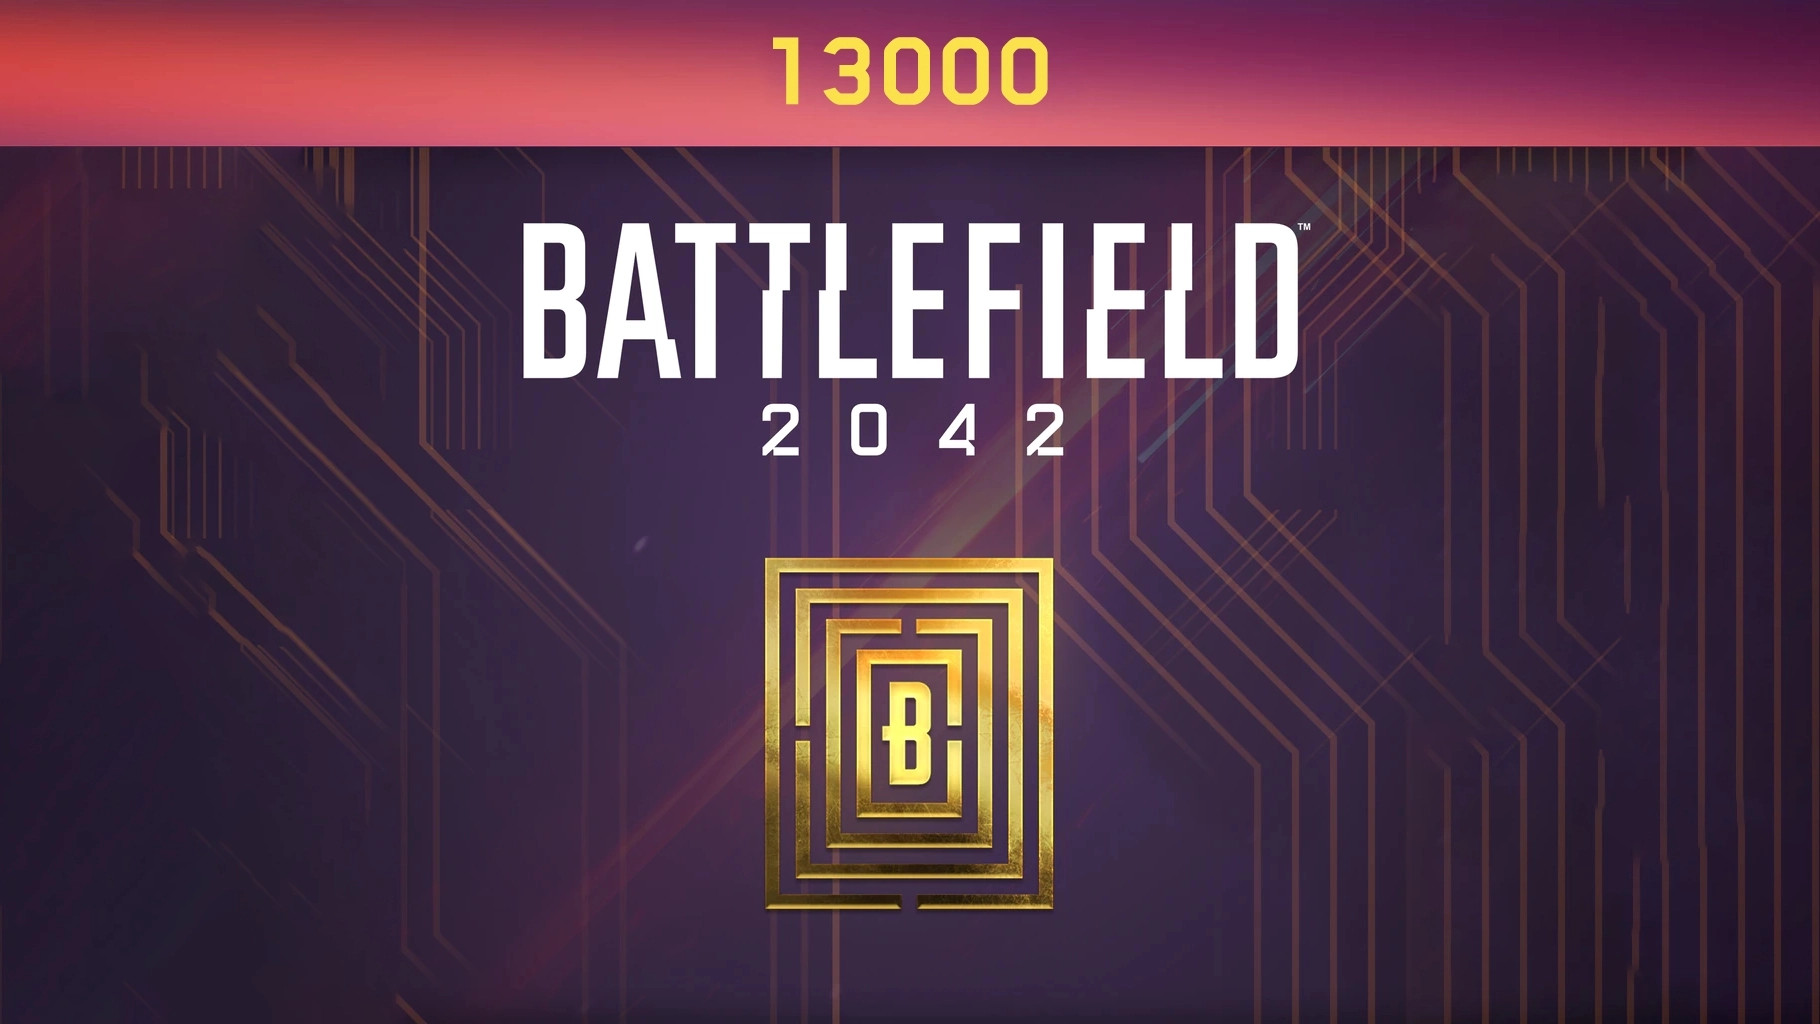 (96.6$) Battlefield 2042 - 13000 BFC Balance XBOX One / Xbox Series X|S CD Key